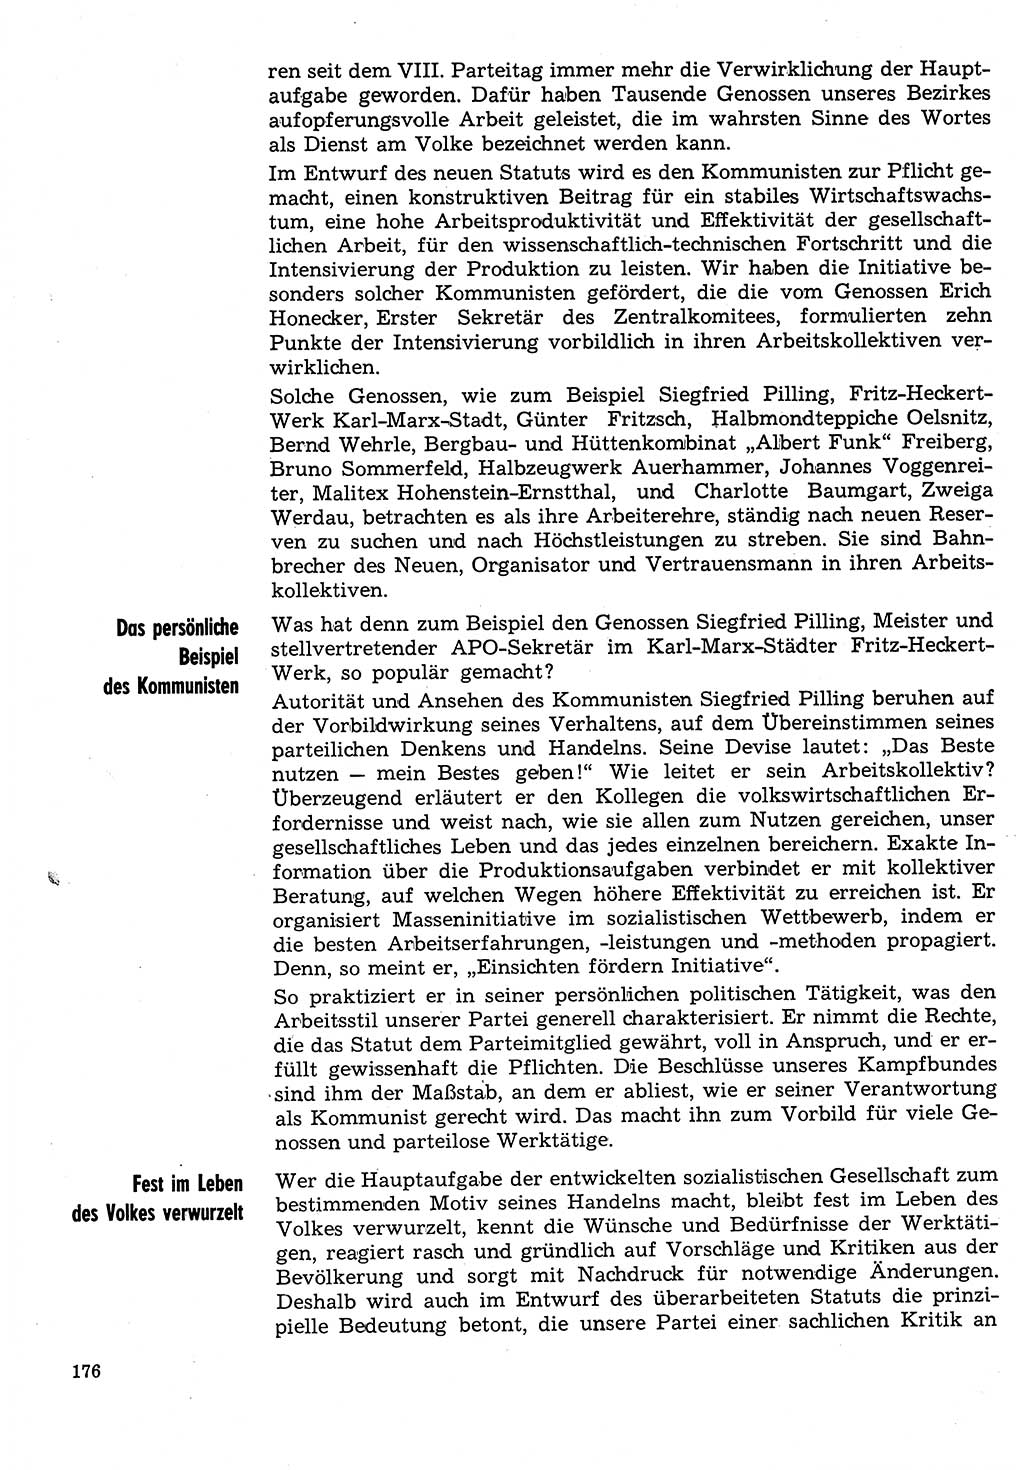 Neuer Weg (NW), Organ des Zentralkomitees (ZK) der SED (Sozialistische Einheitspartei Deutschlands) für Fragen des Parteilebens, 31. Jahrgang [Deutsche Demokratische Republik (DDR)] 1976, Seite 176 (NW ZK SED DDR 1976, S. 176)